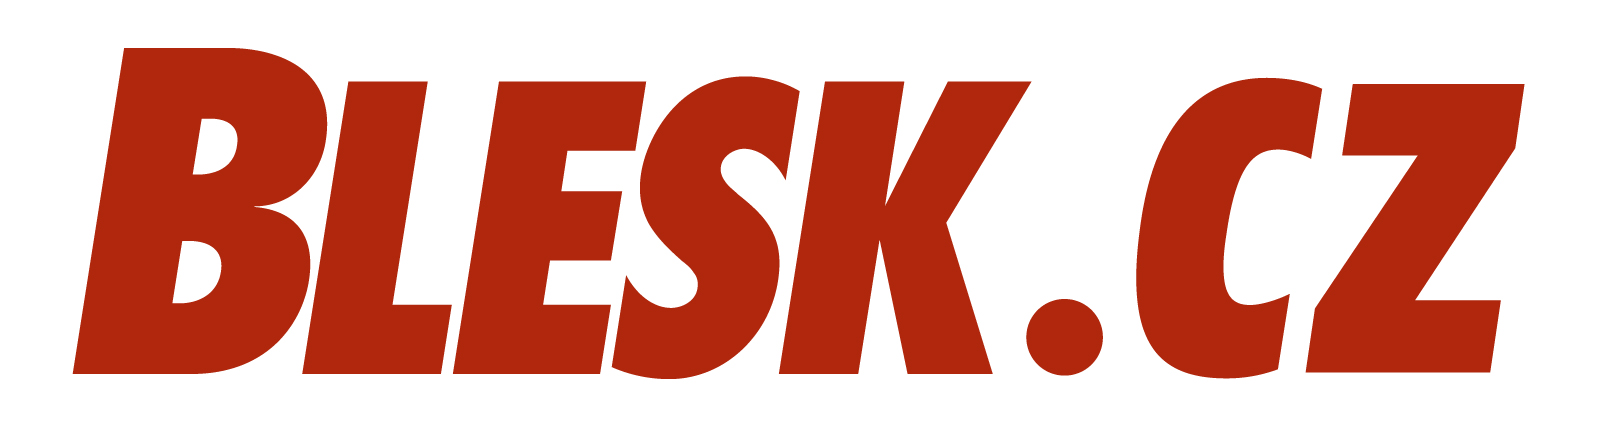 Blesk Logo